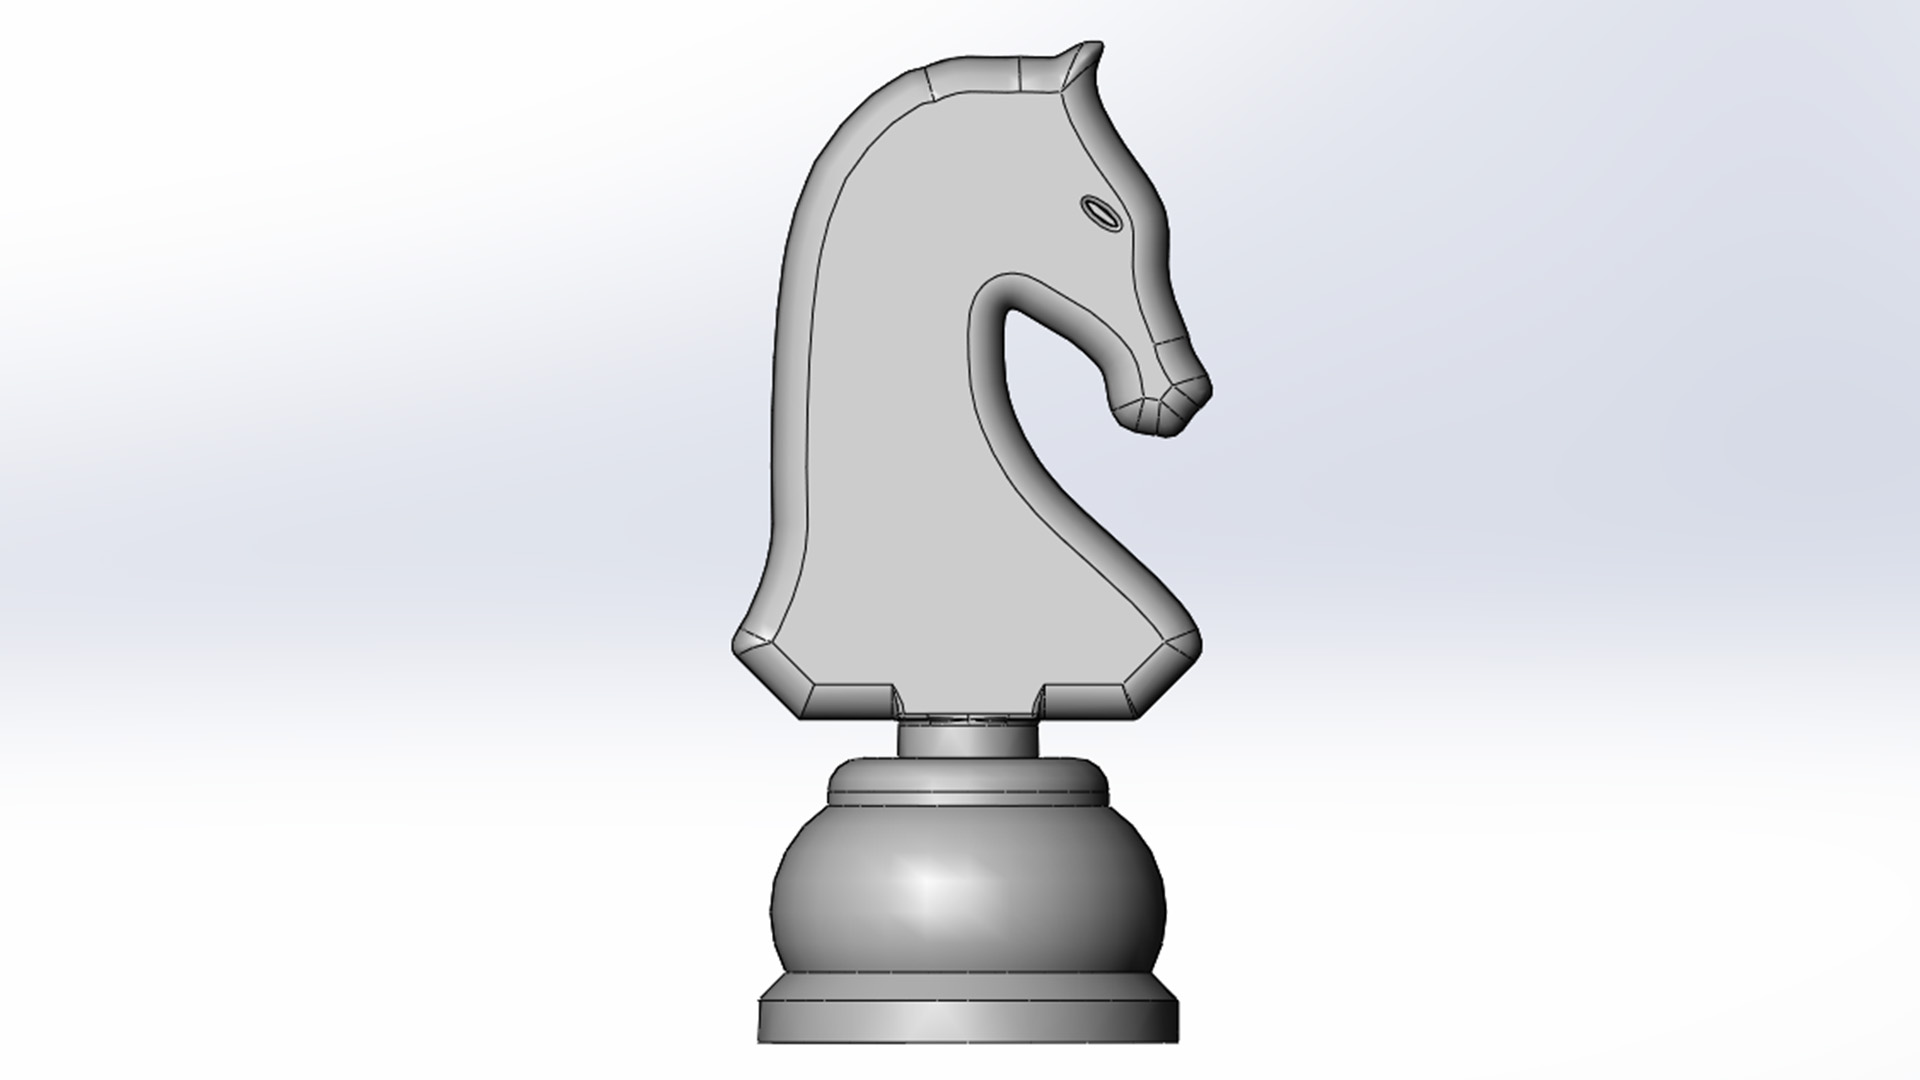 Xadrez – o cavalo B002735 file stl free download 3D Model for CNC and 3d  printer – Free download 3d model Files